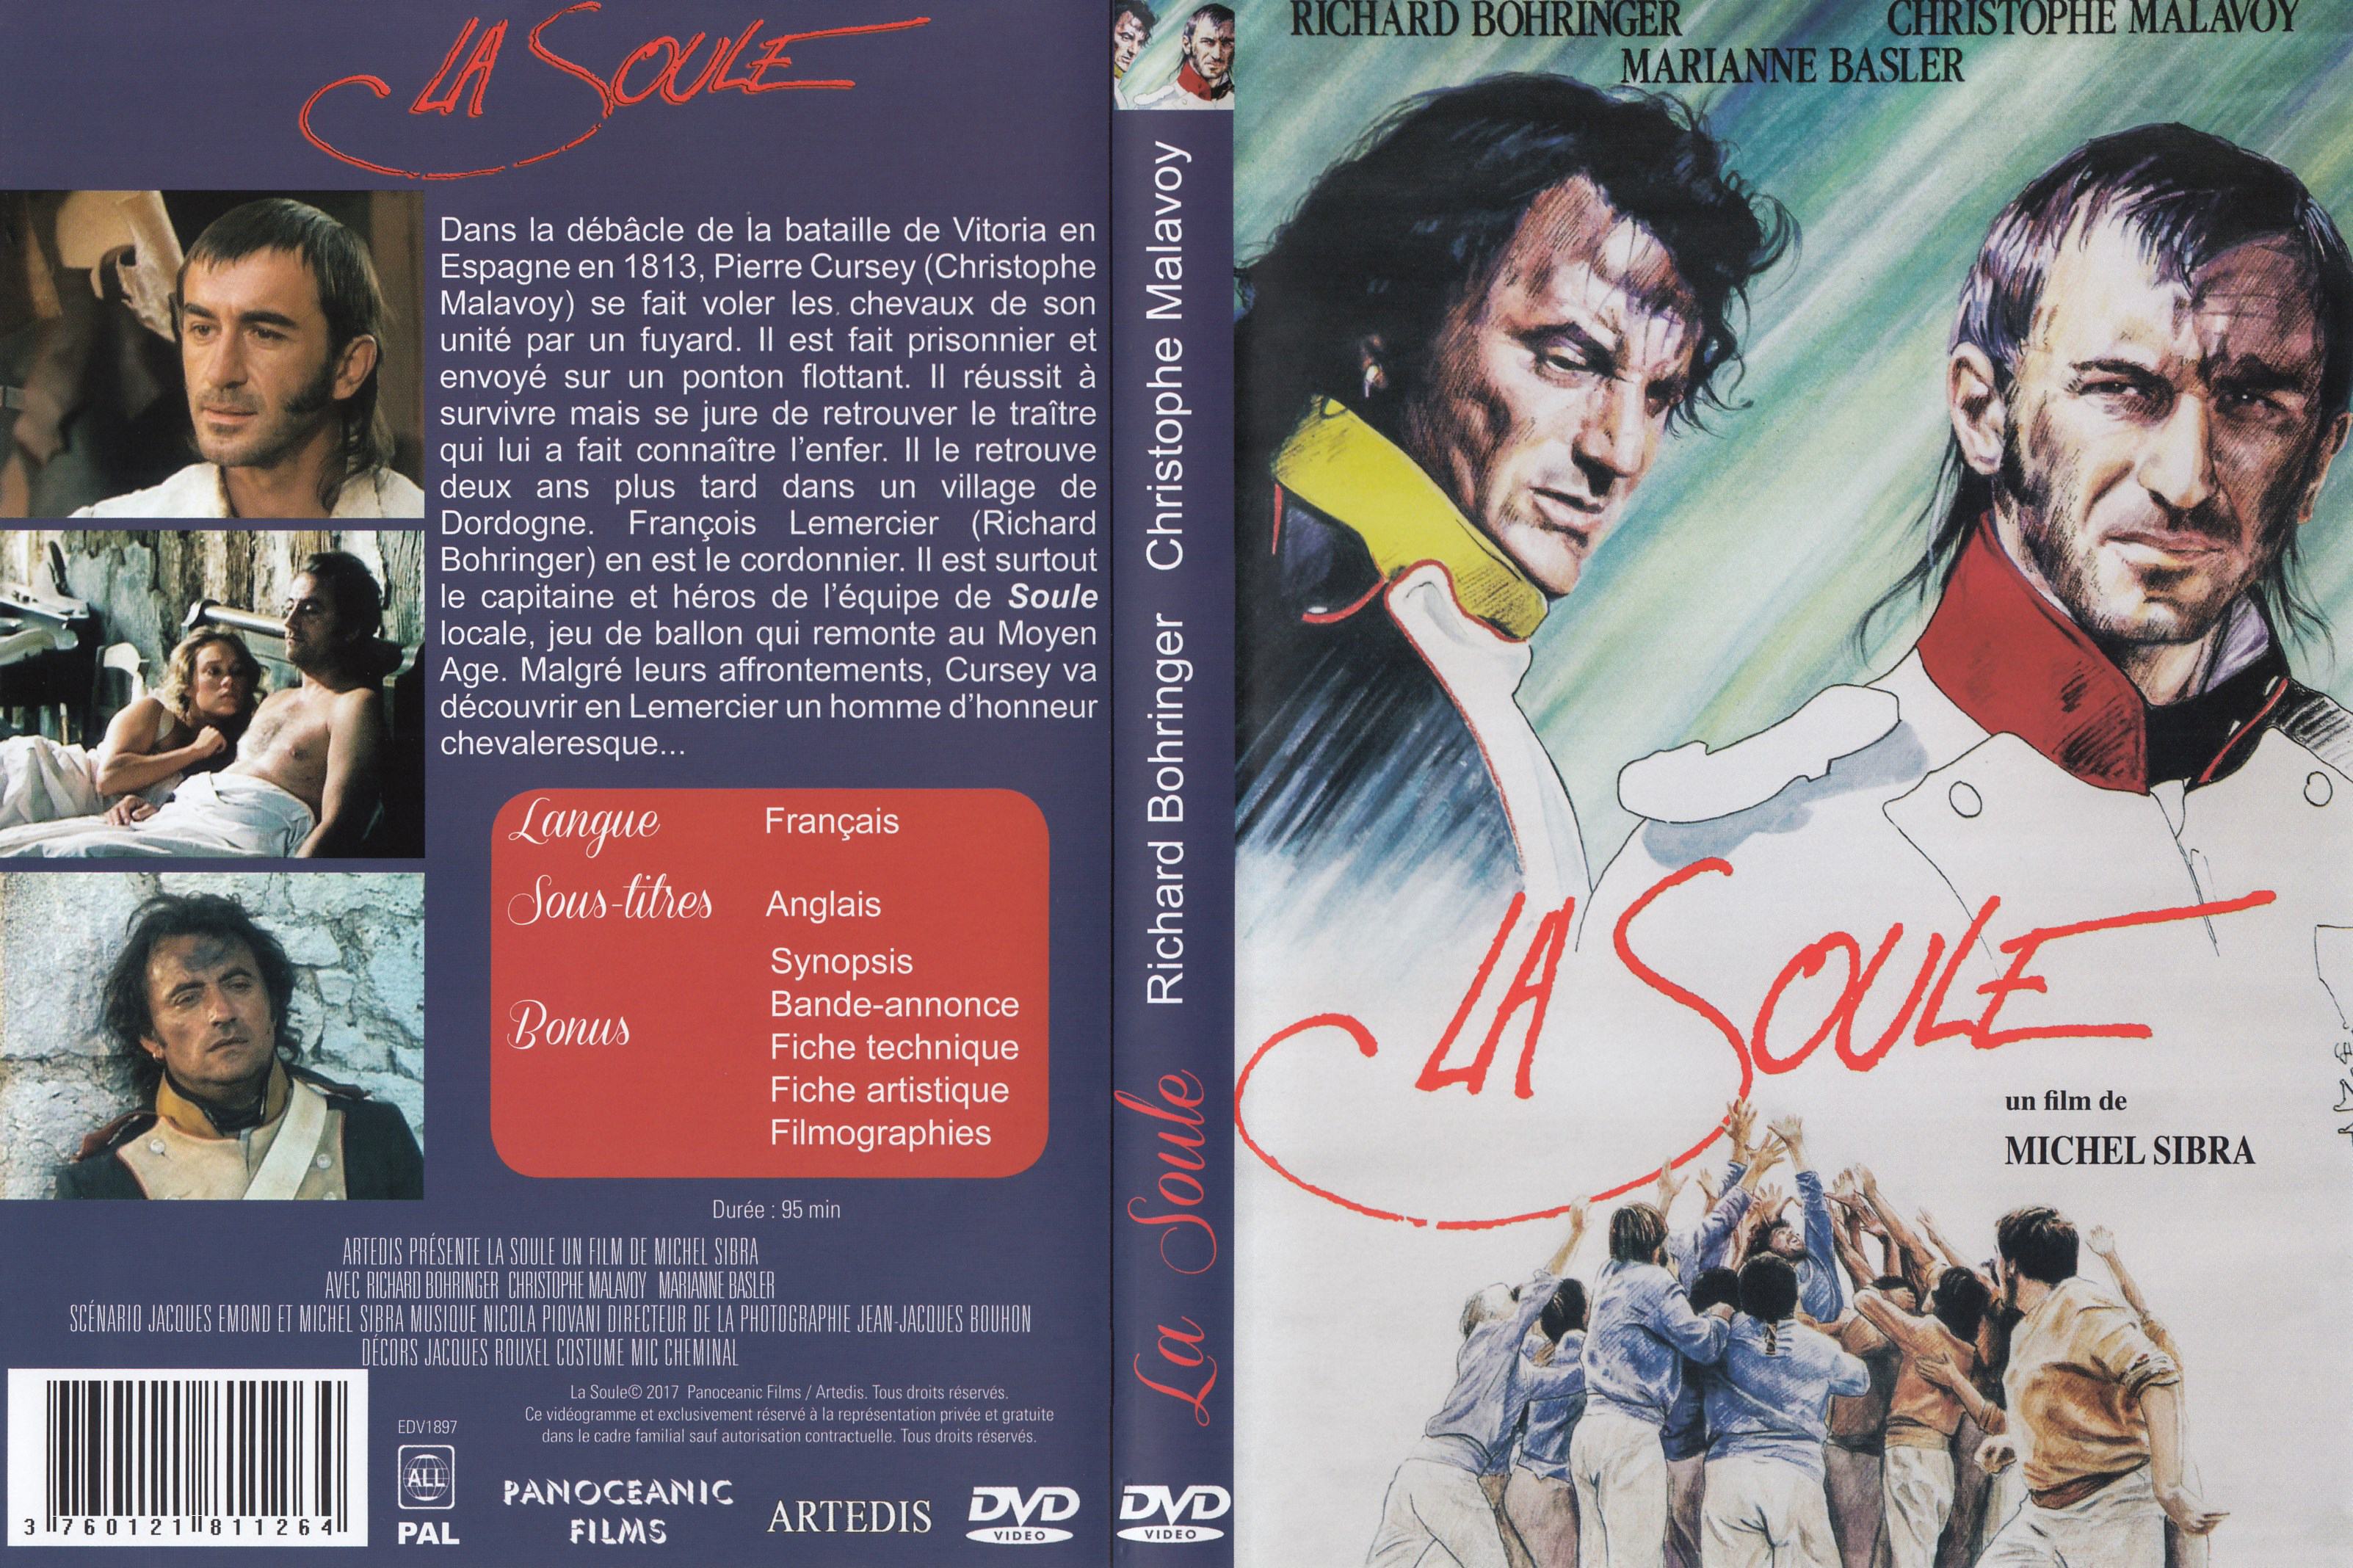 Jaquette DVD La soule